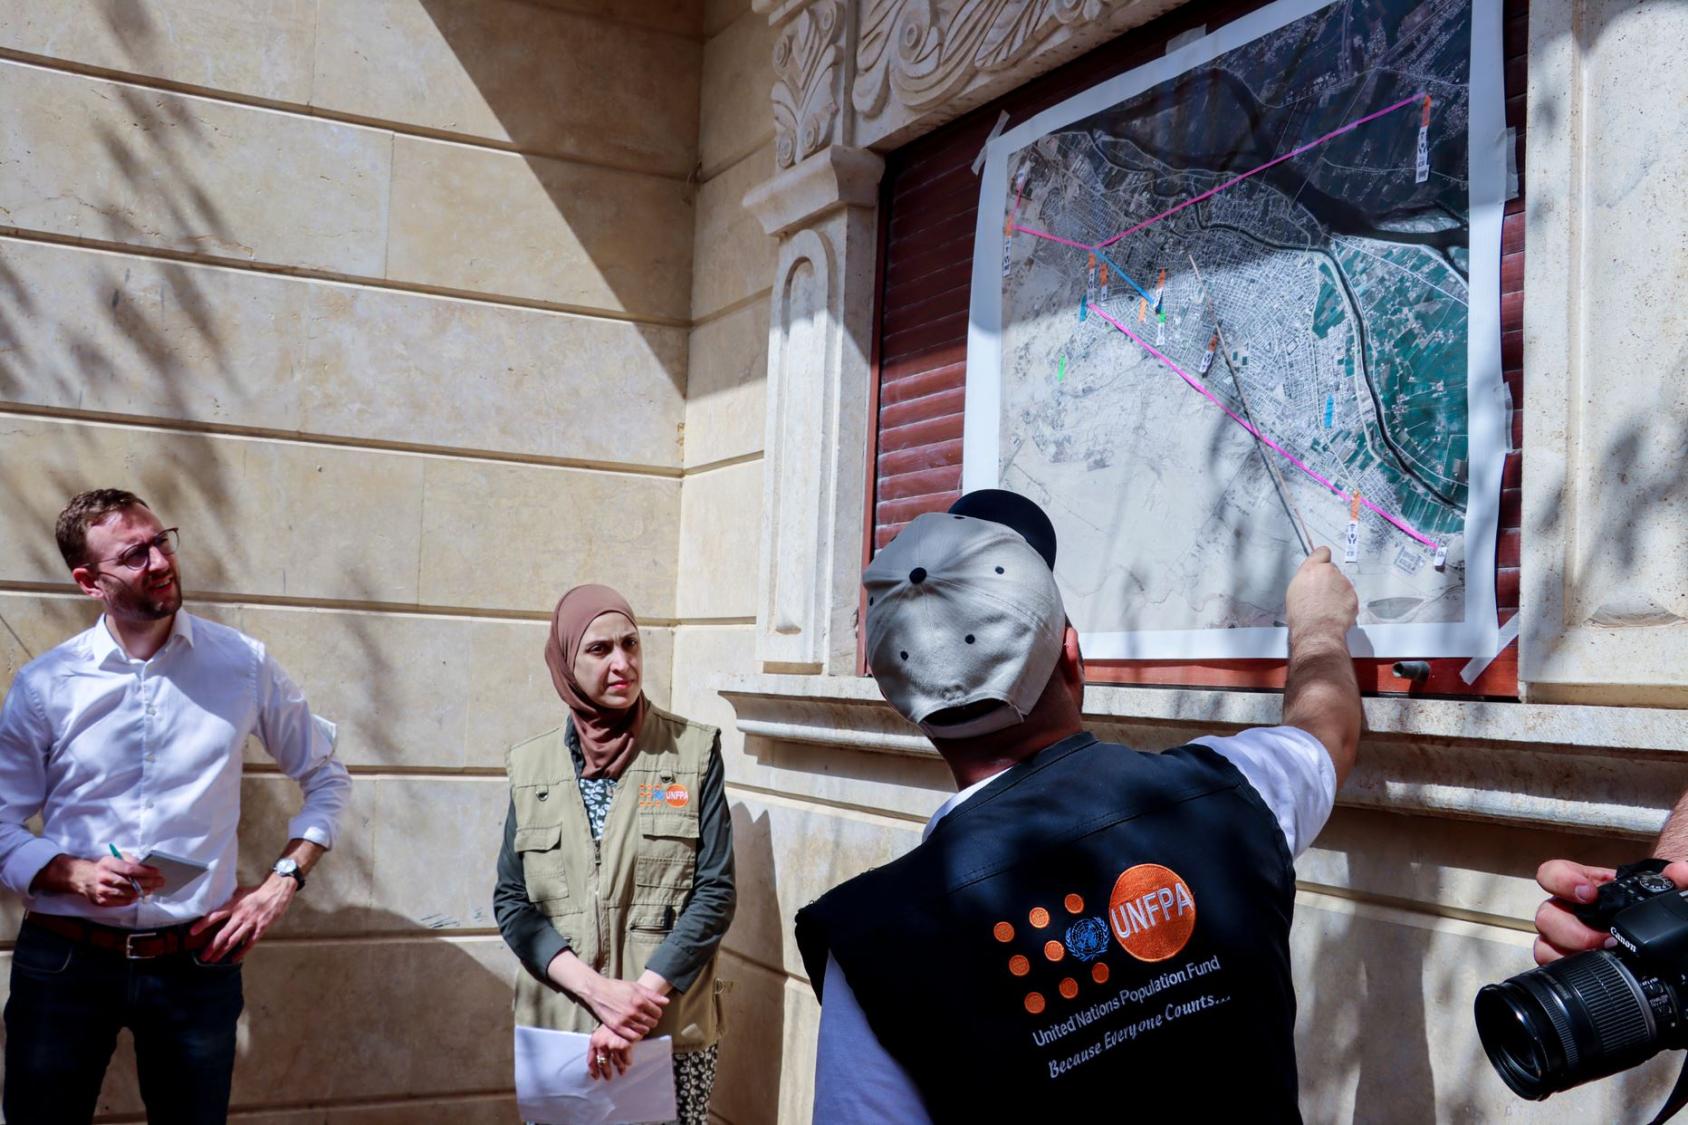 Des agents de l'UNFPA expliquent la situation à un groupe de donateurs lors d'une visite dans la partie urbaine de Deir Ezzor, en Syrie.